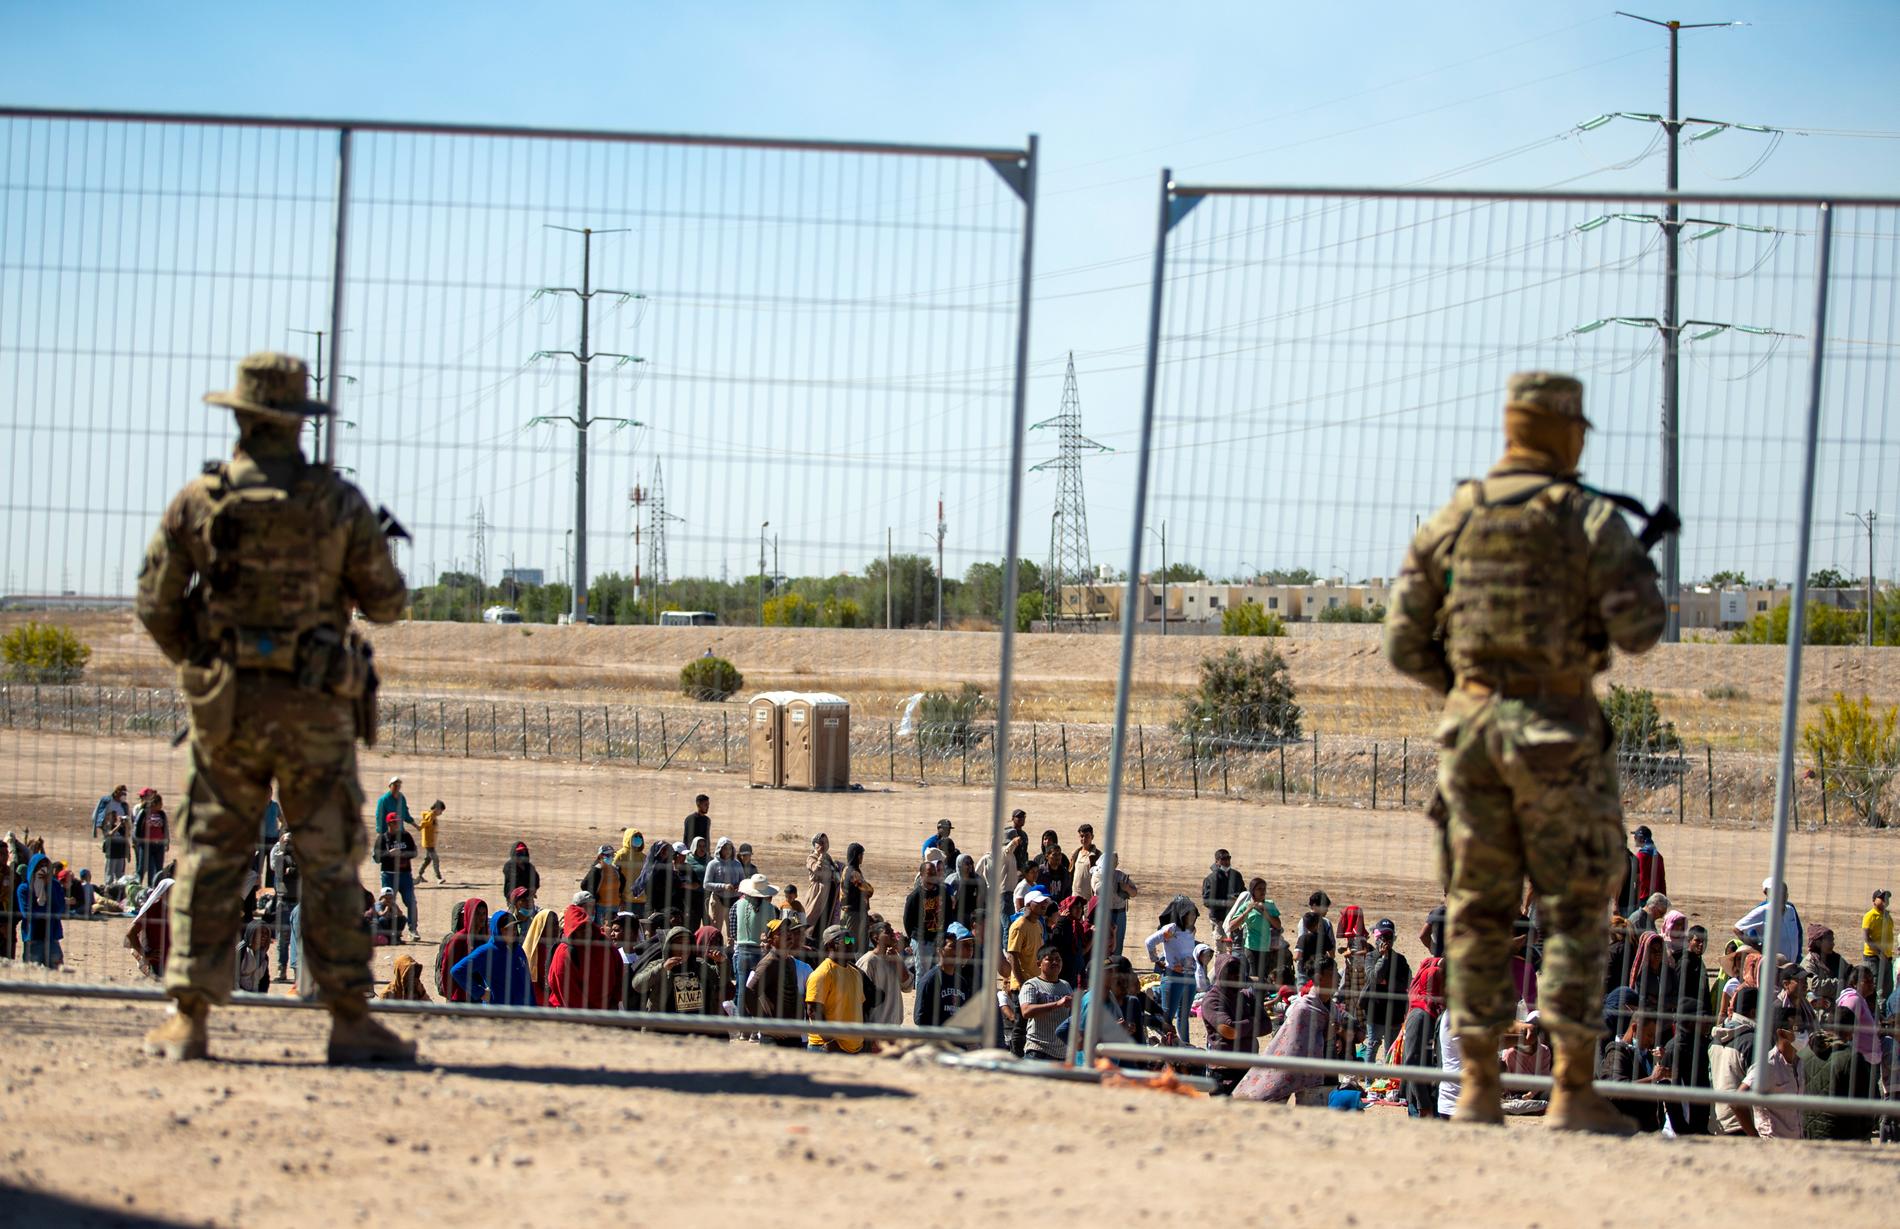 Stängsel vid gränsen i El Paso, Texas.